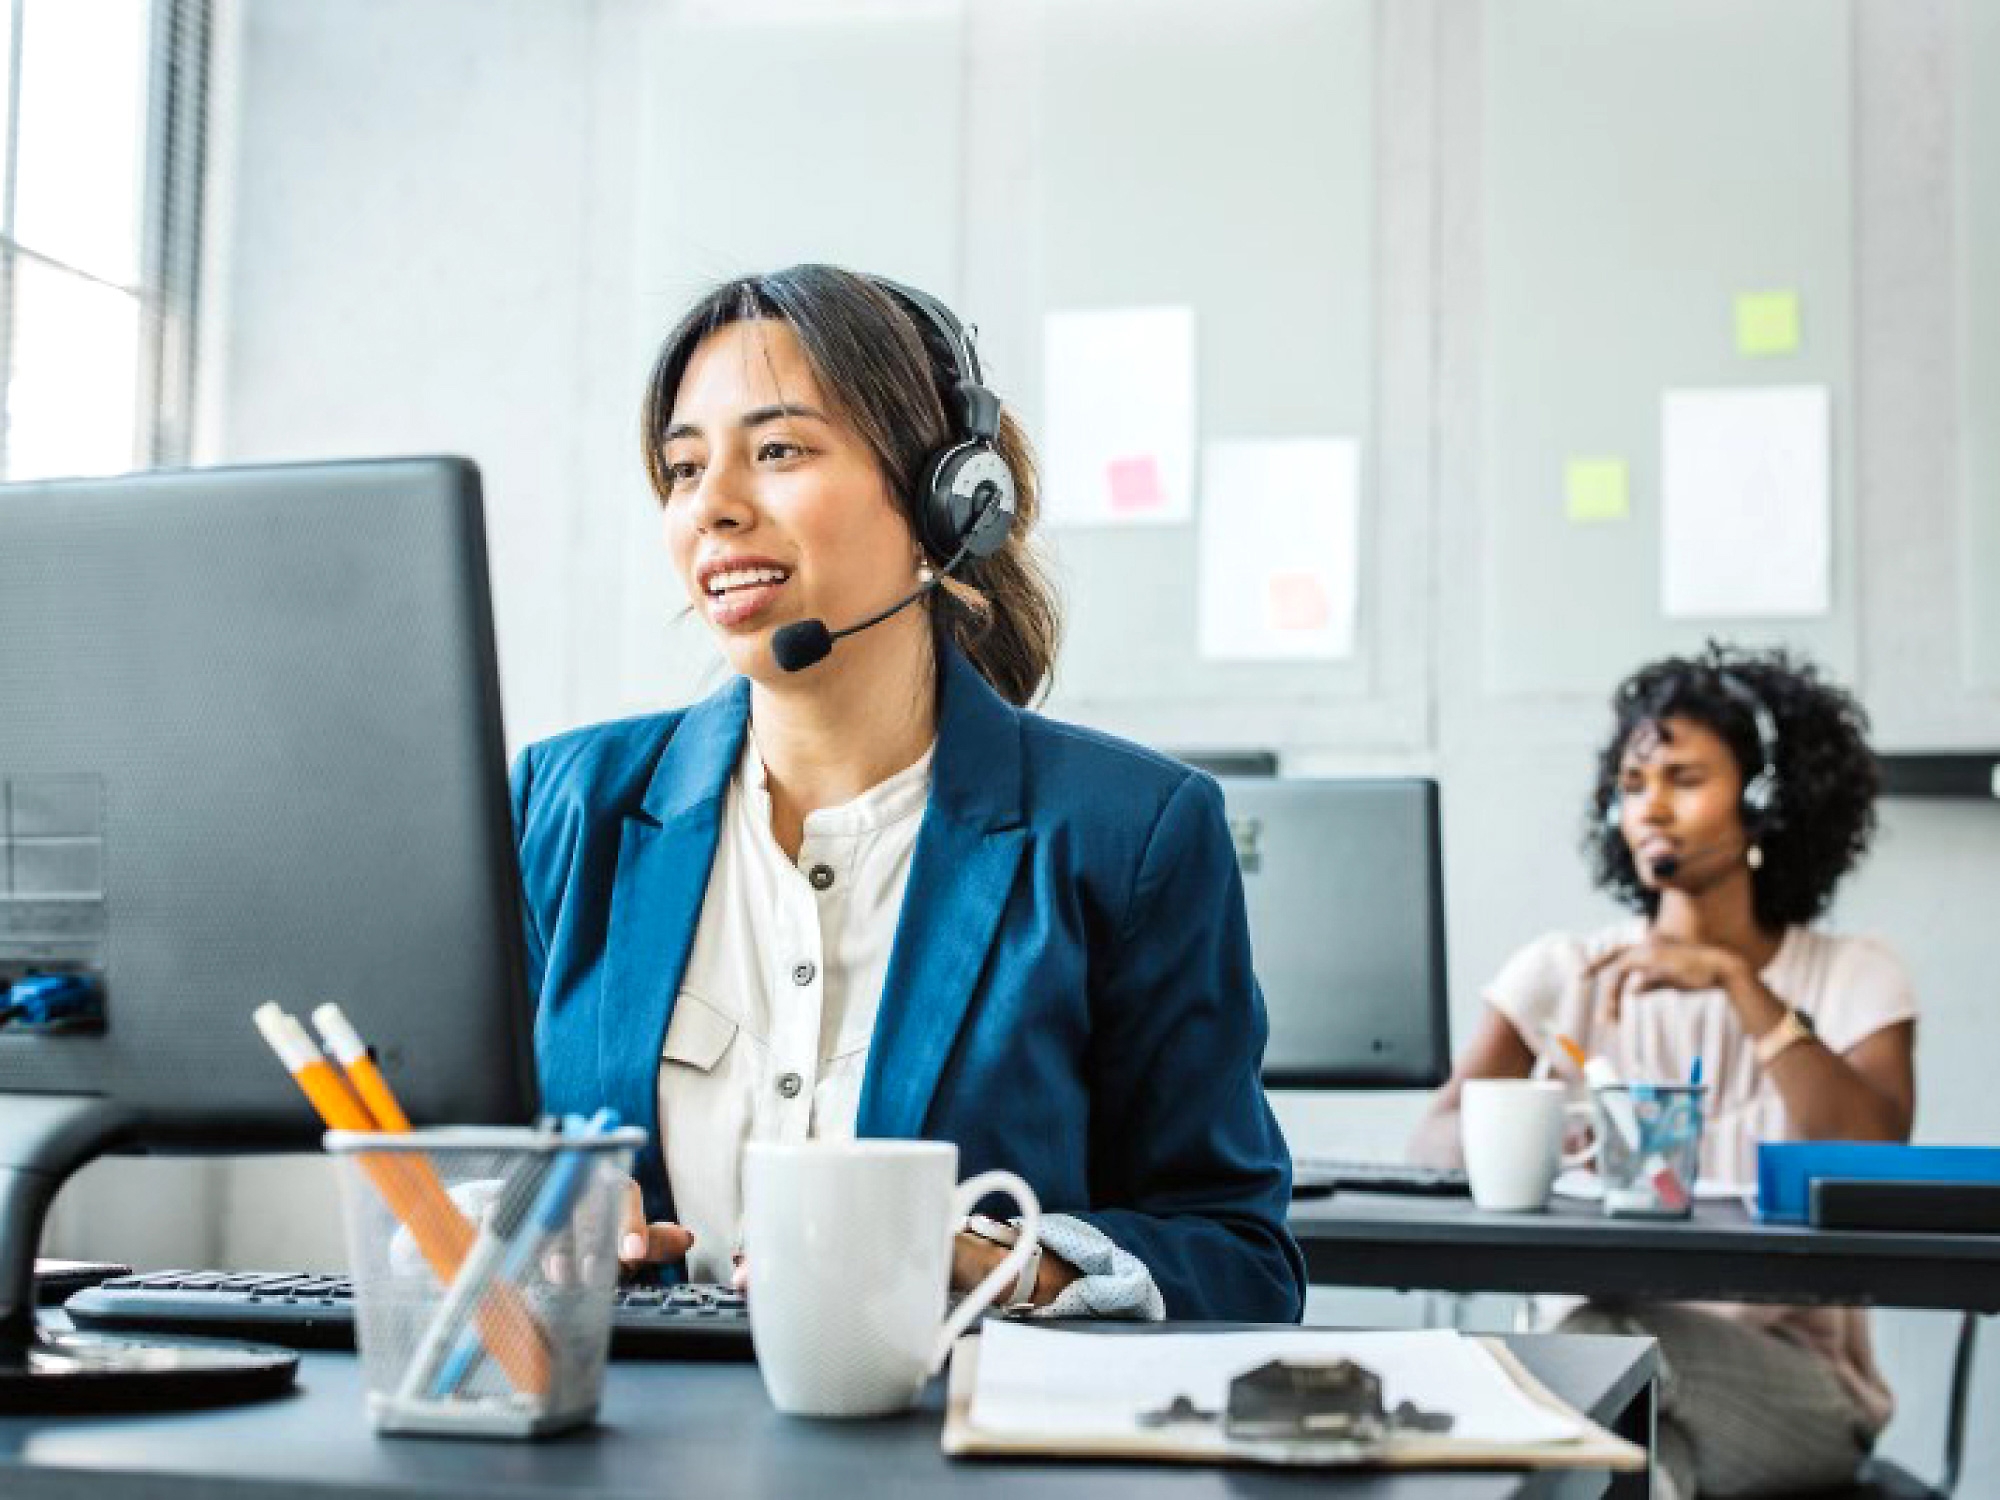 Un representante del servicio de atención al cliente sonriente con auriculares mientras trabaja en su equipo en una oficina.